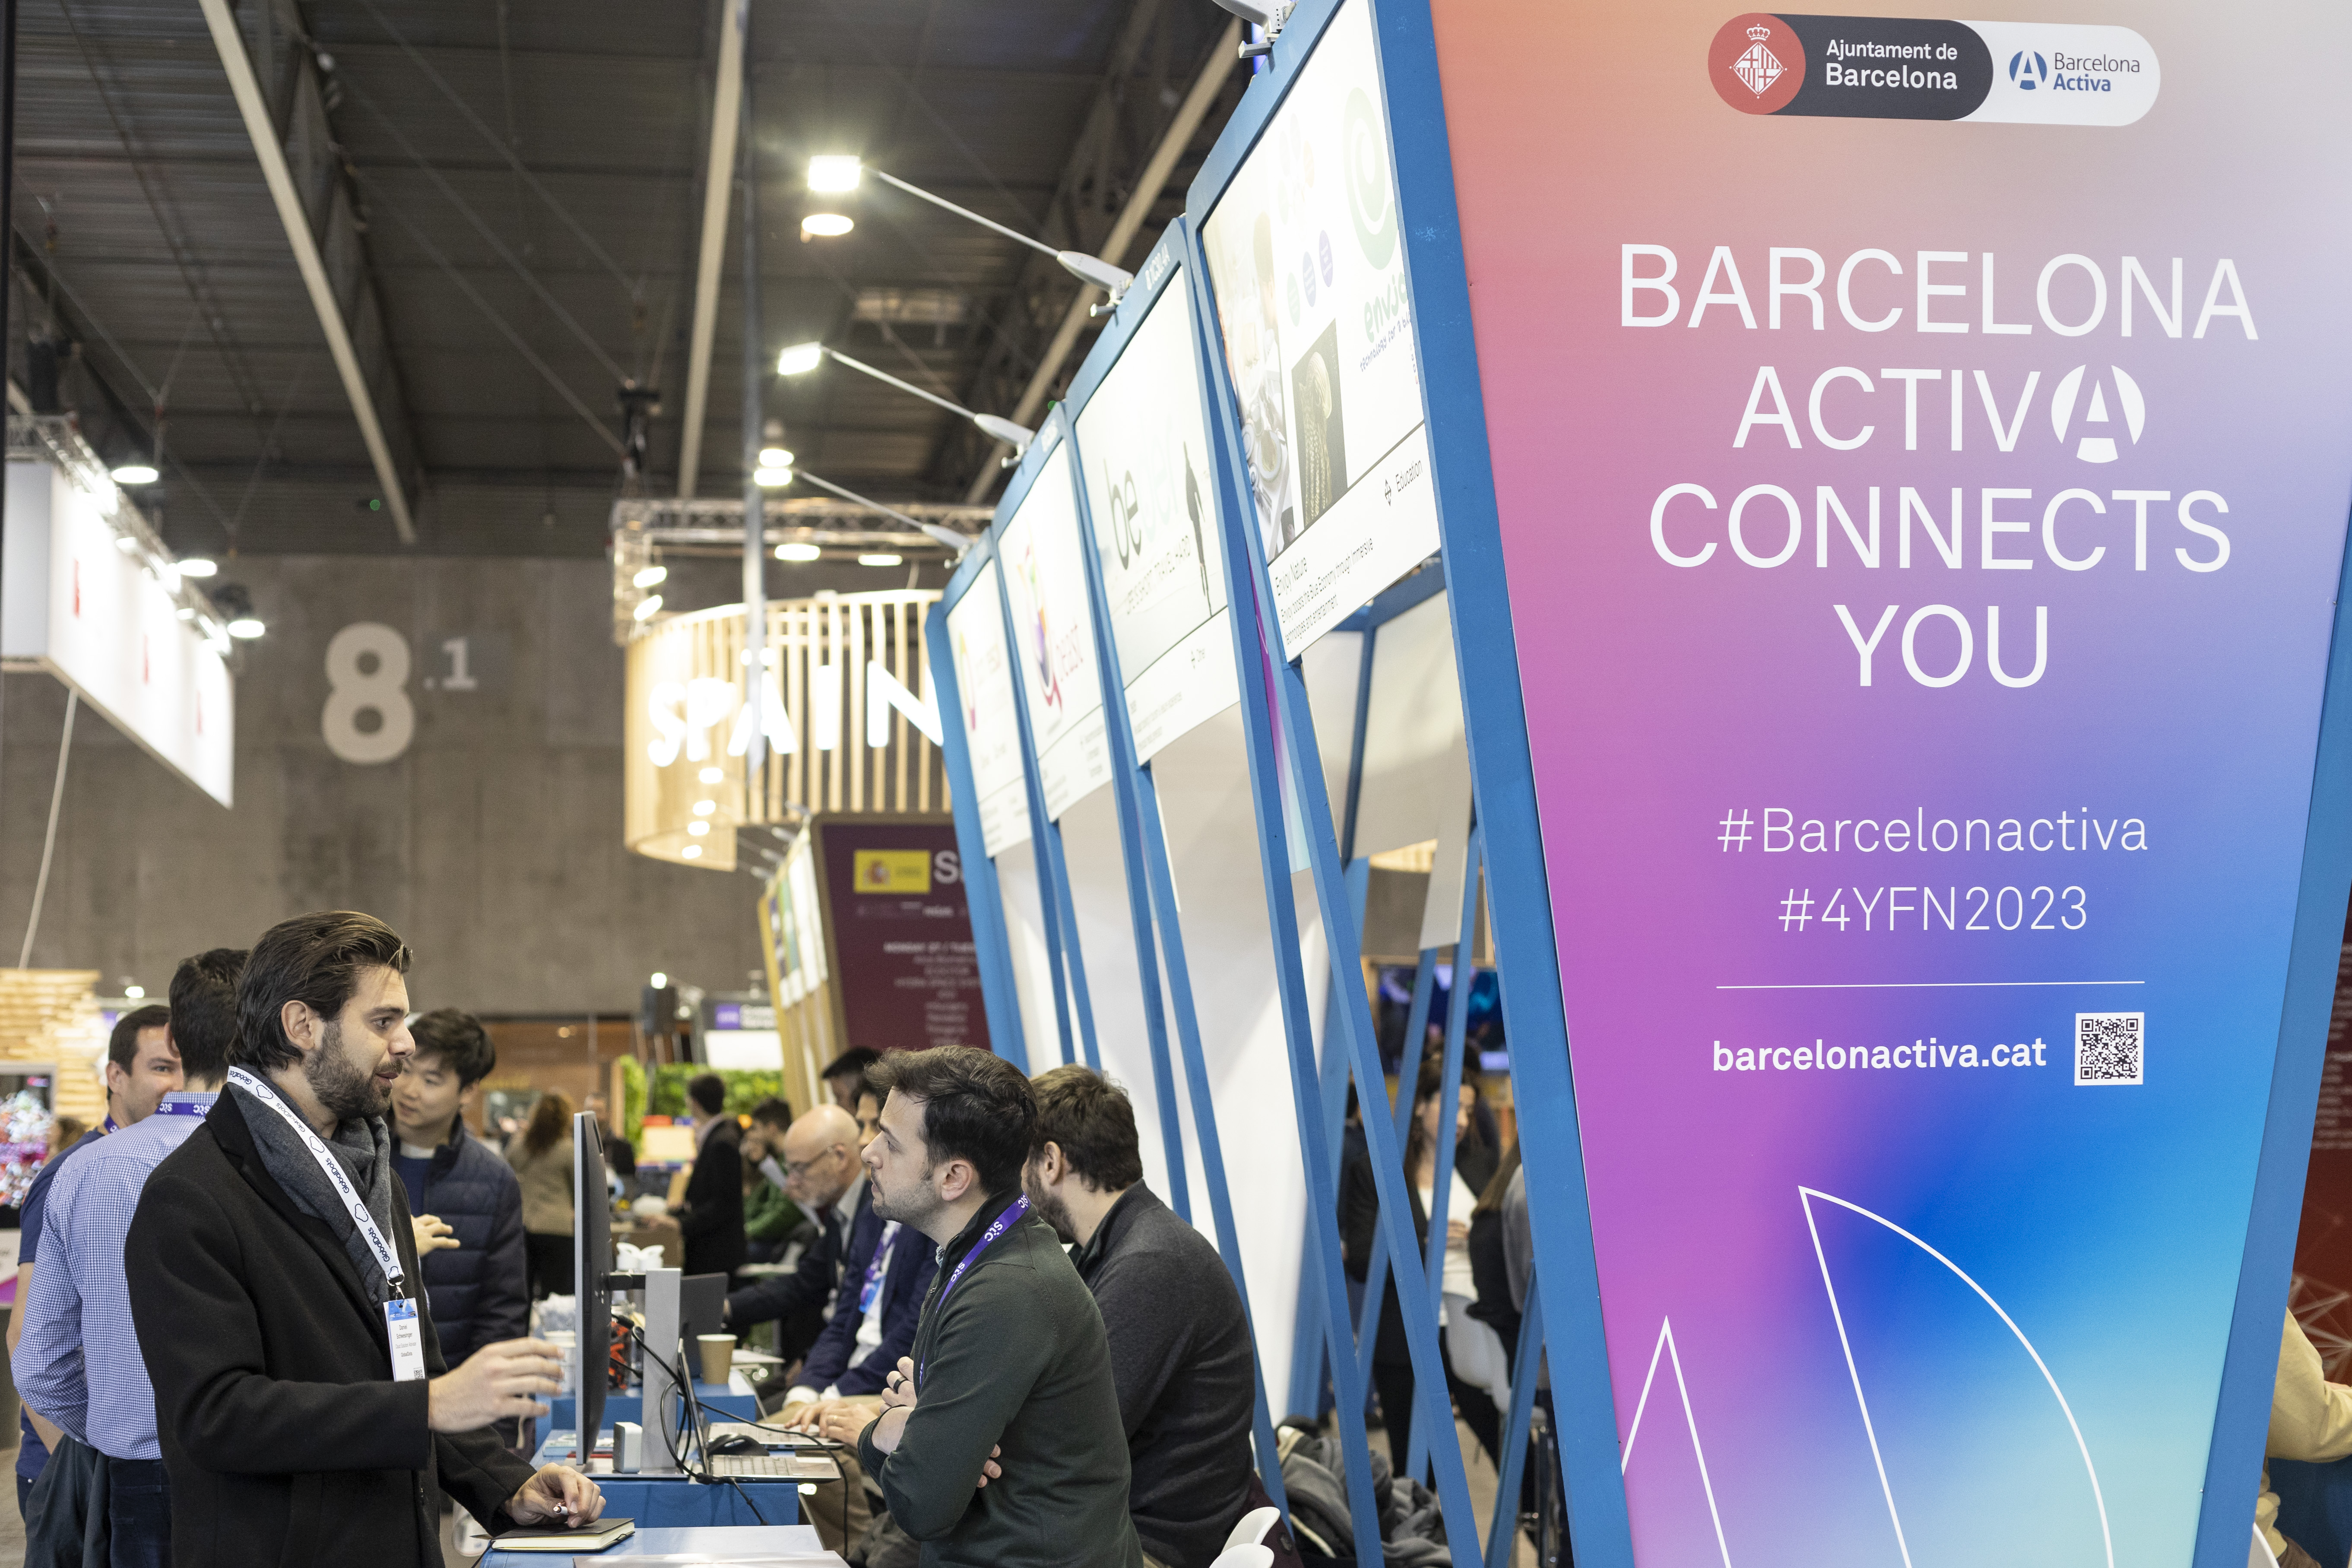 Barcelona Activa formará parte del congreso 4YFN-MWC del 26 al 29 de febrero para impulsar el ecosistema emprendedor de la ciudad 